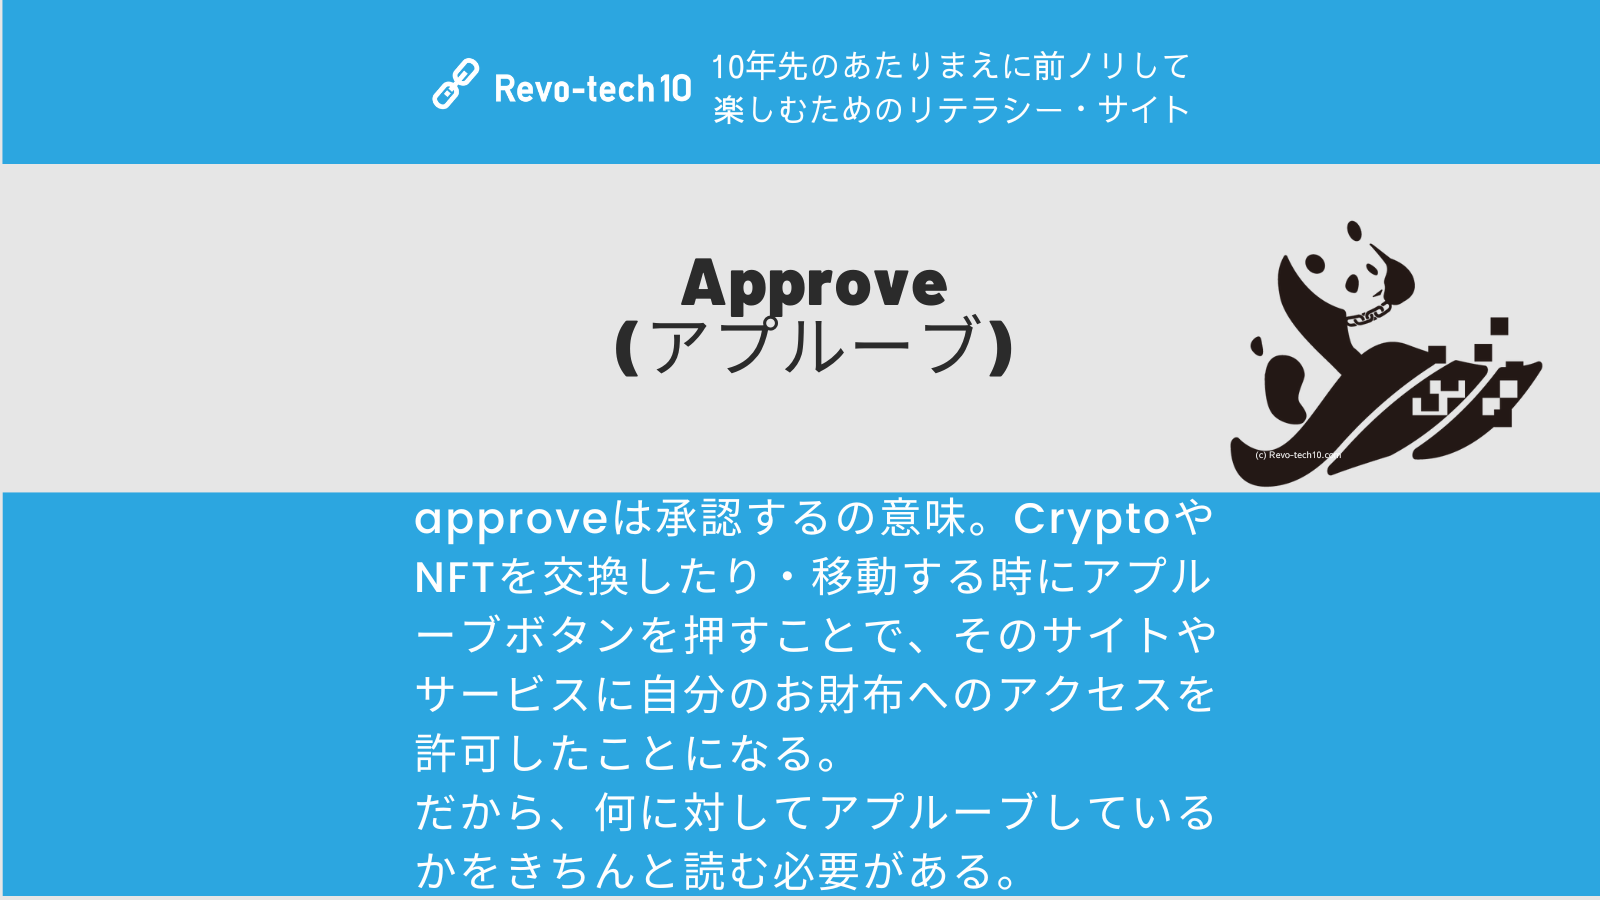 0078_Approve (アプルーブ)とは承認するの意味。CryptoやNFTを交換したり・移動する時にアプルーブボタンを押すことで、そのサイトやサービスに自分のお財布へのアクセスを許可したことになる。 だから、何に対してアプルーブしているかをきちんと読む必要がある。